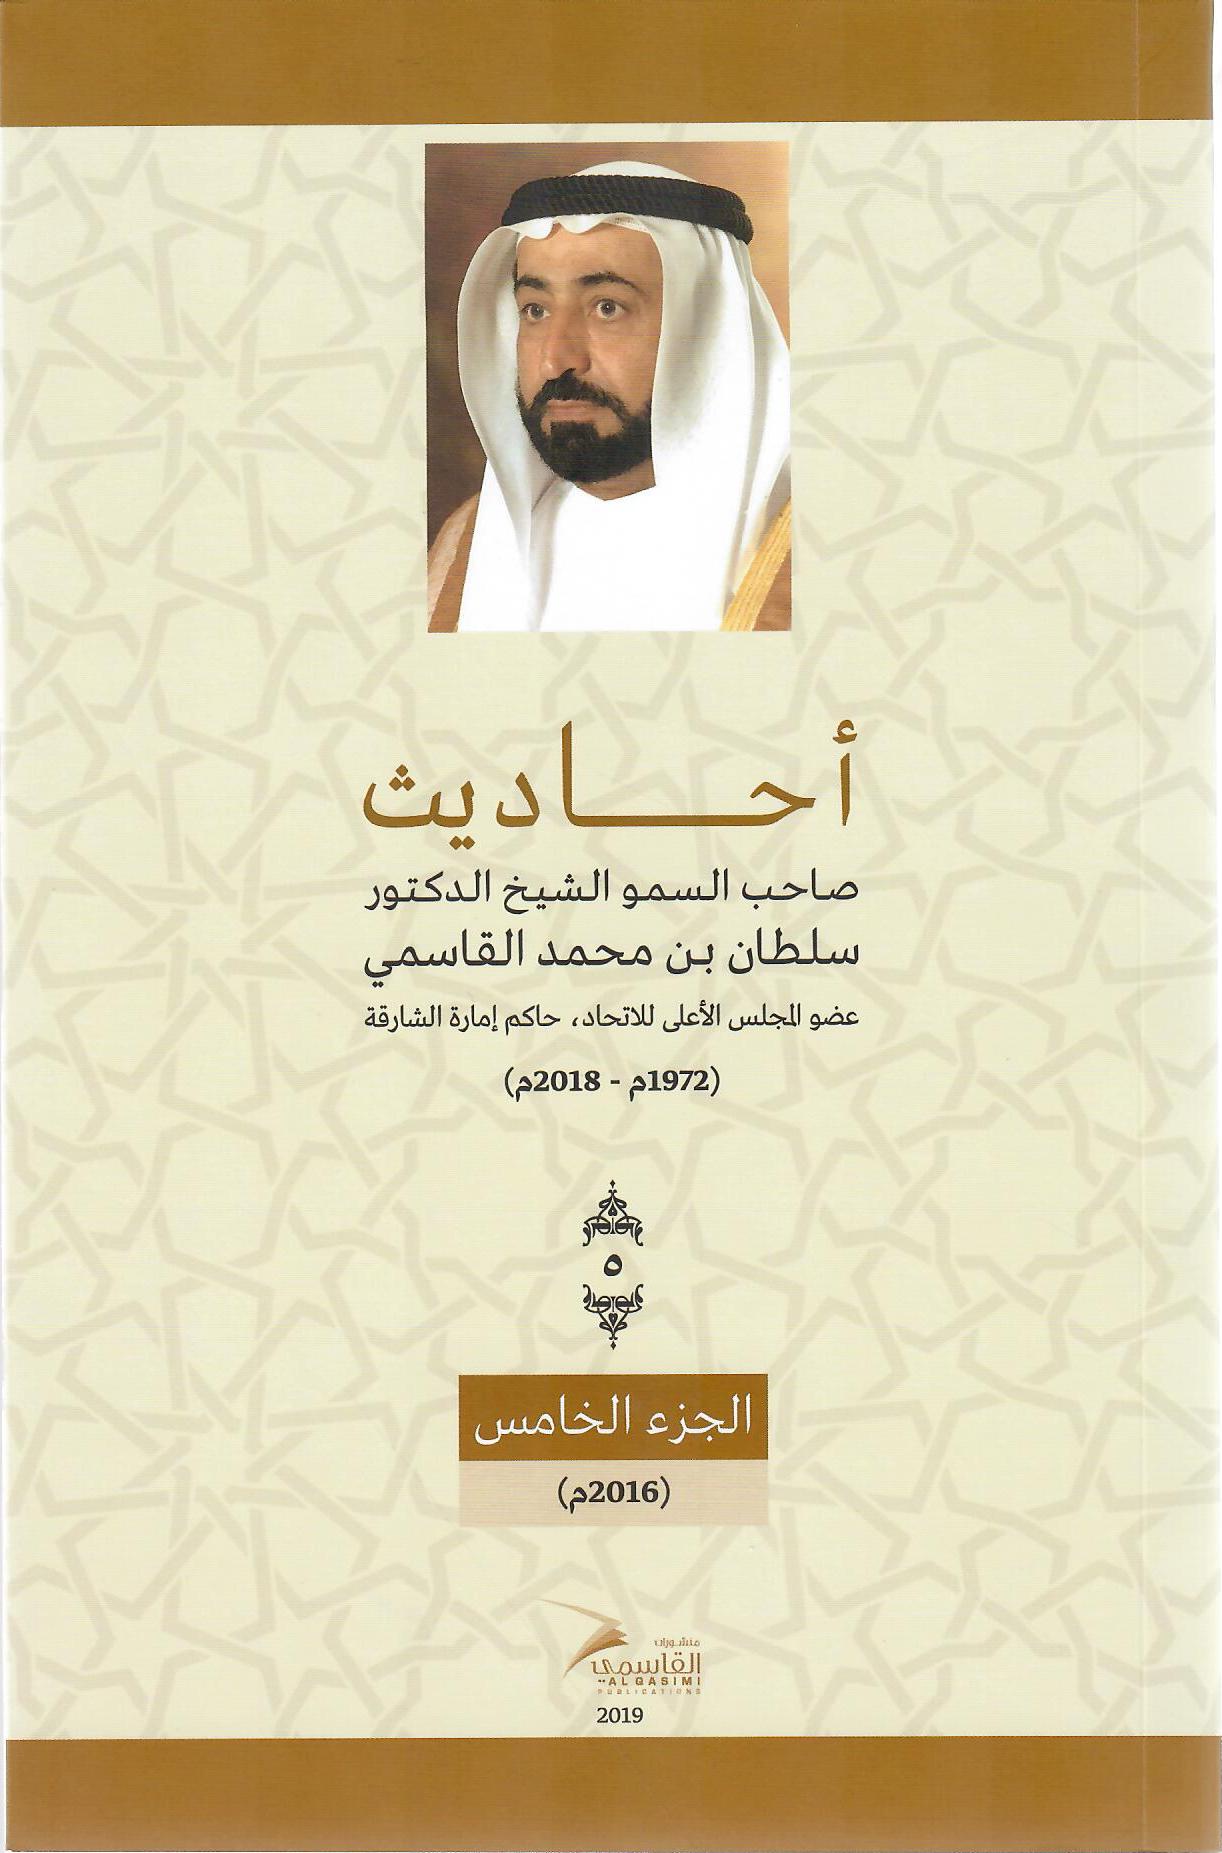 أحاديث صاحب السمو الشيخ الدكتور سلطان بن محمد القاسمي عضو المجلس الأعلى حاكم الشارقة ( 1972م - 2018م) الجزء الخامس